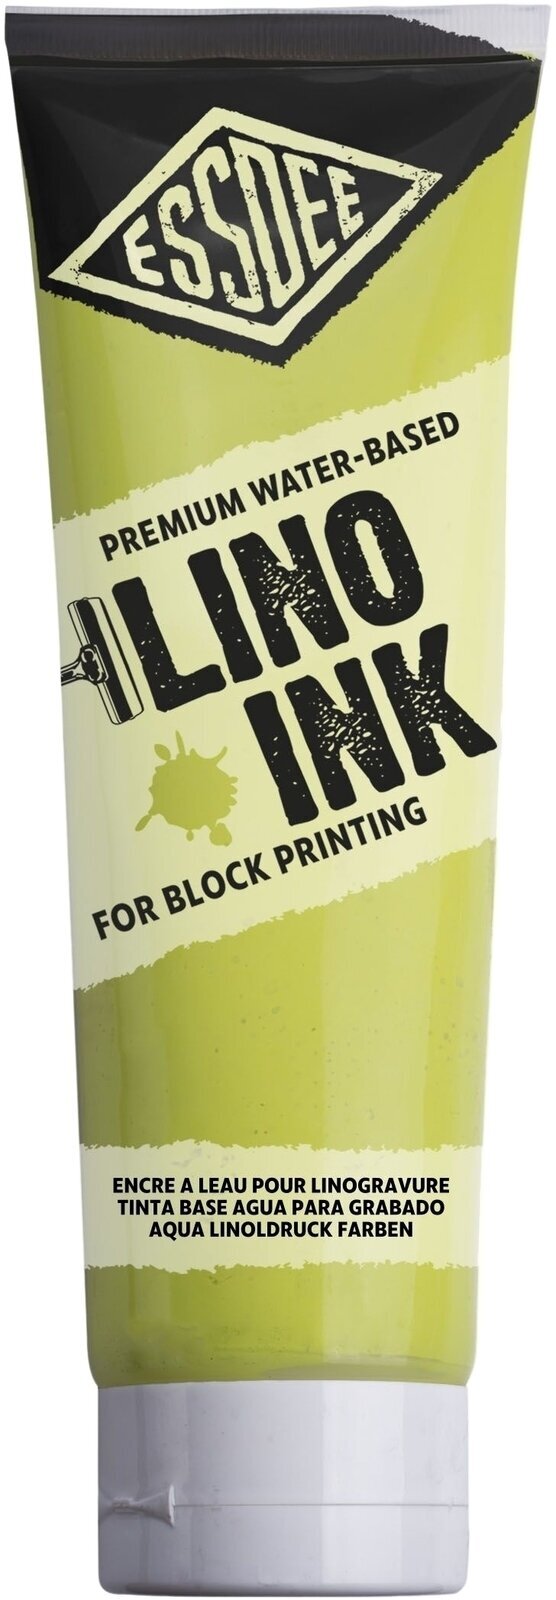 Verf voor linosnede Essdee Block Printing Ink Verf voor linosnede Fluorescent Yellow 300 ml